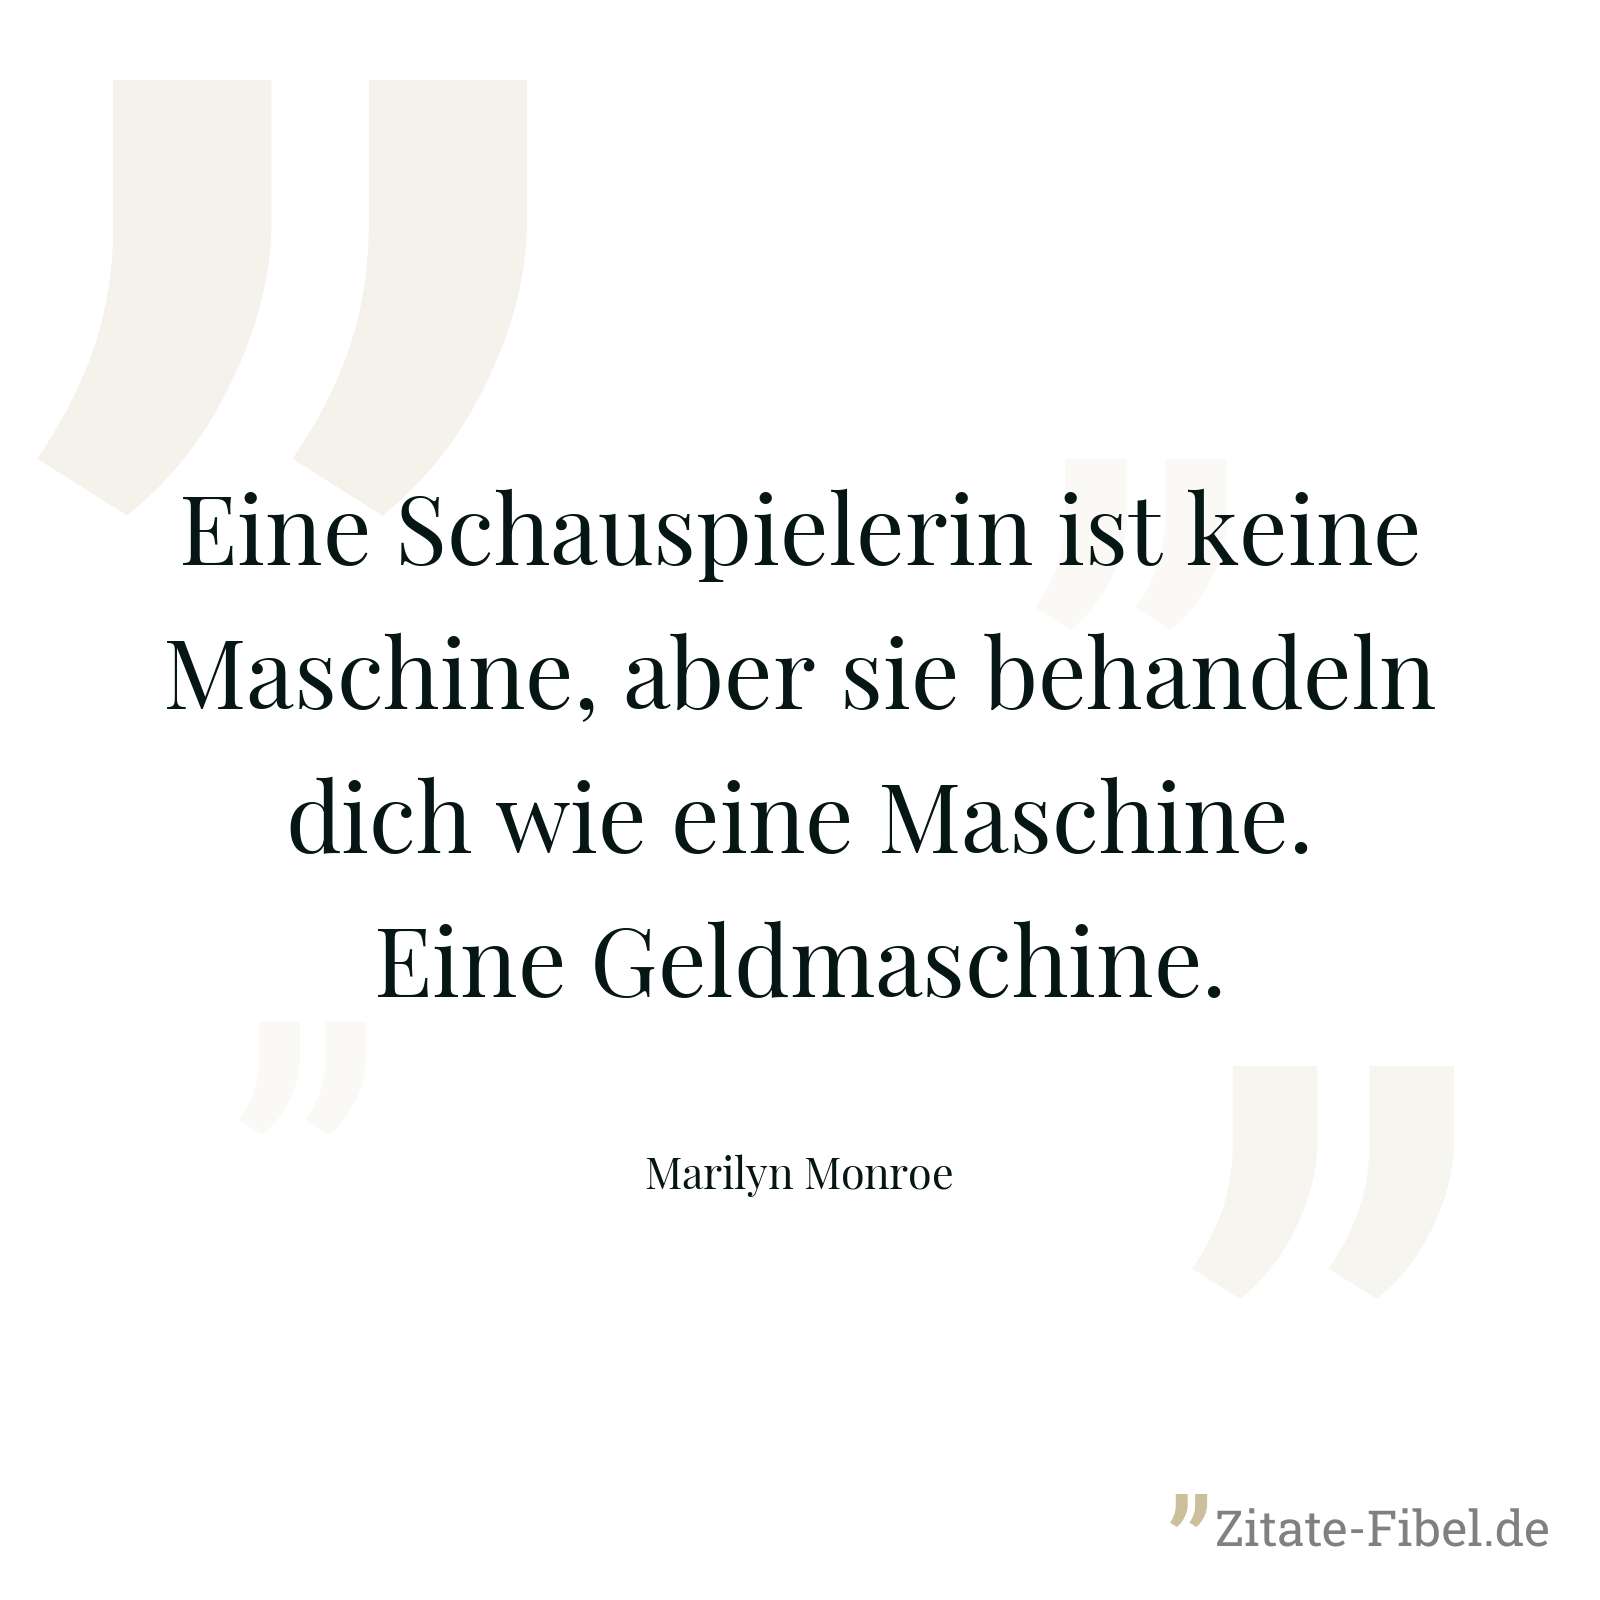 Eine Schauspielerin ist keine Maschine, aber sie behandeln dich wie eine Maschine. Eine Geldmaschine. - Marilyn Monroe